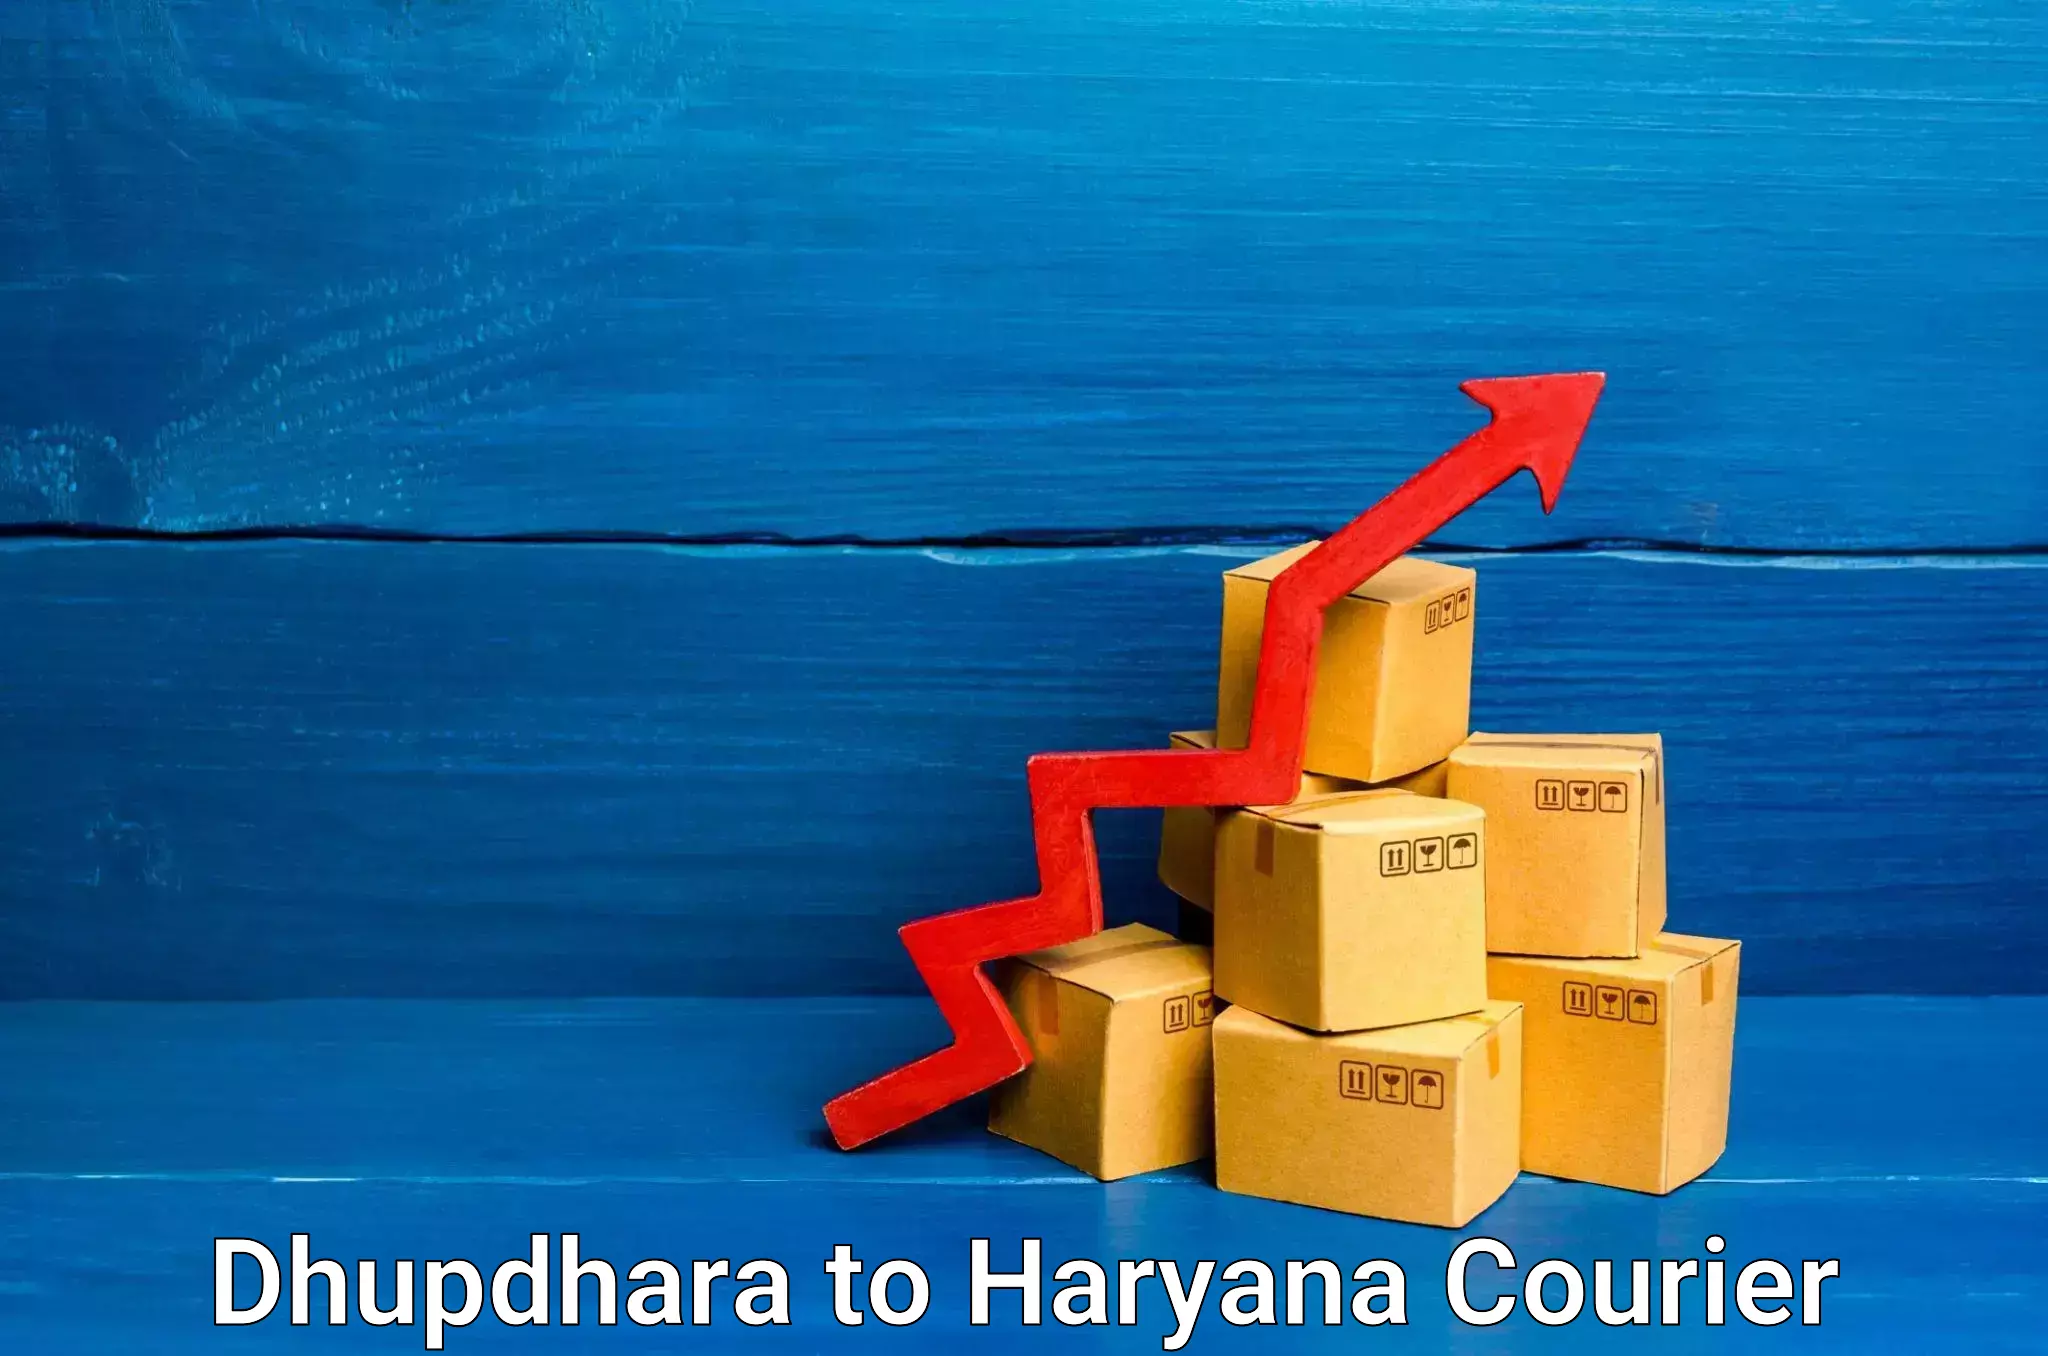 Seamless shipping service Dhupdhara to Odhan